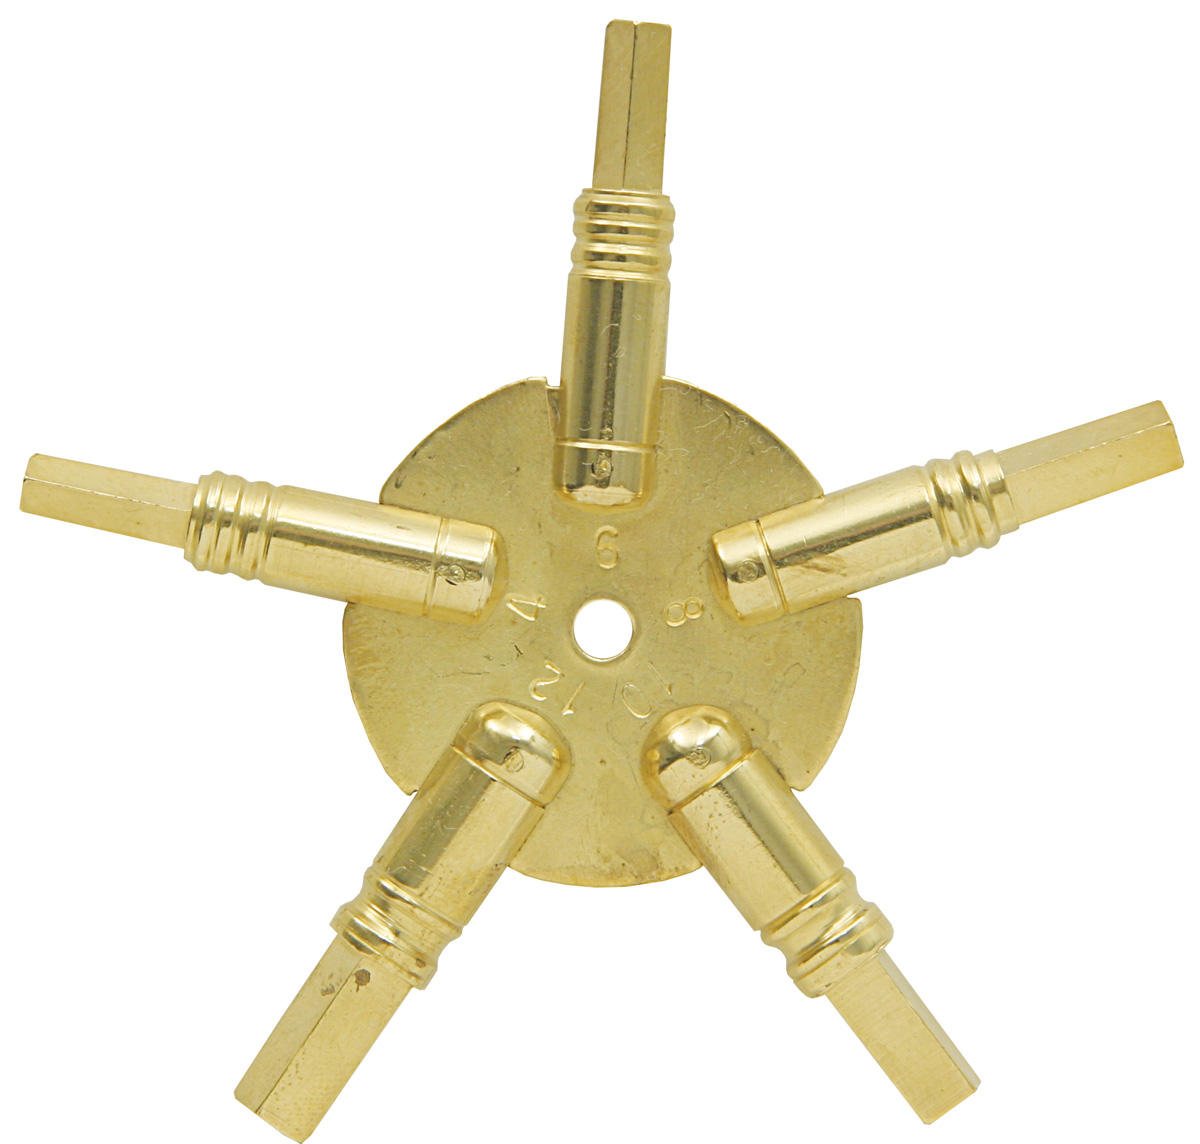 brassclock key size 1.50mm 